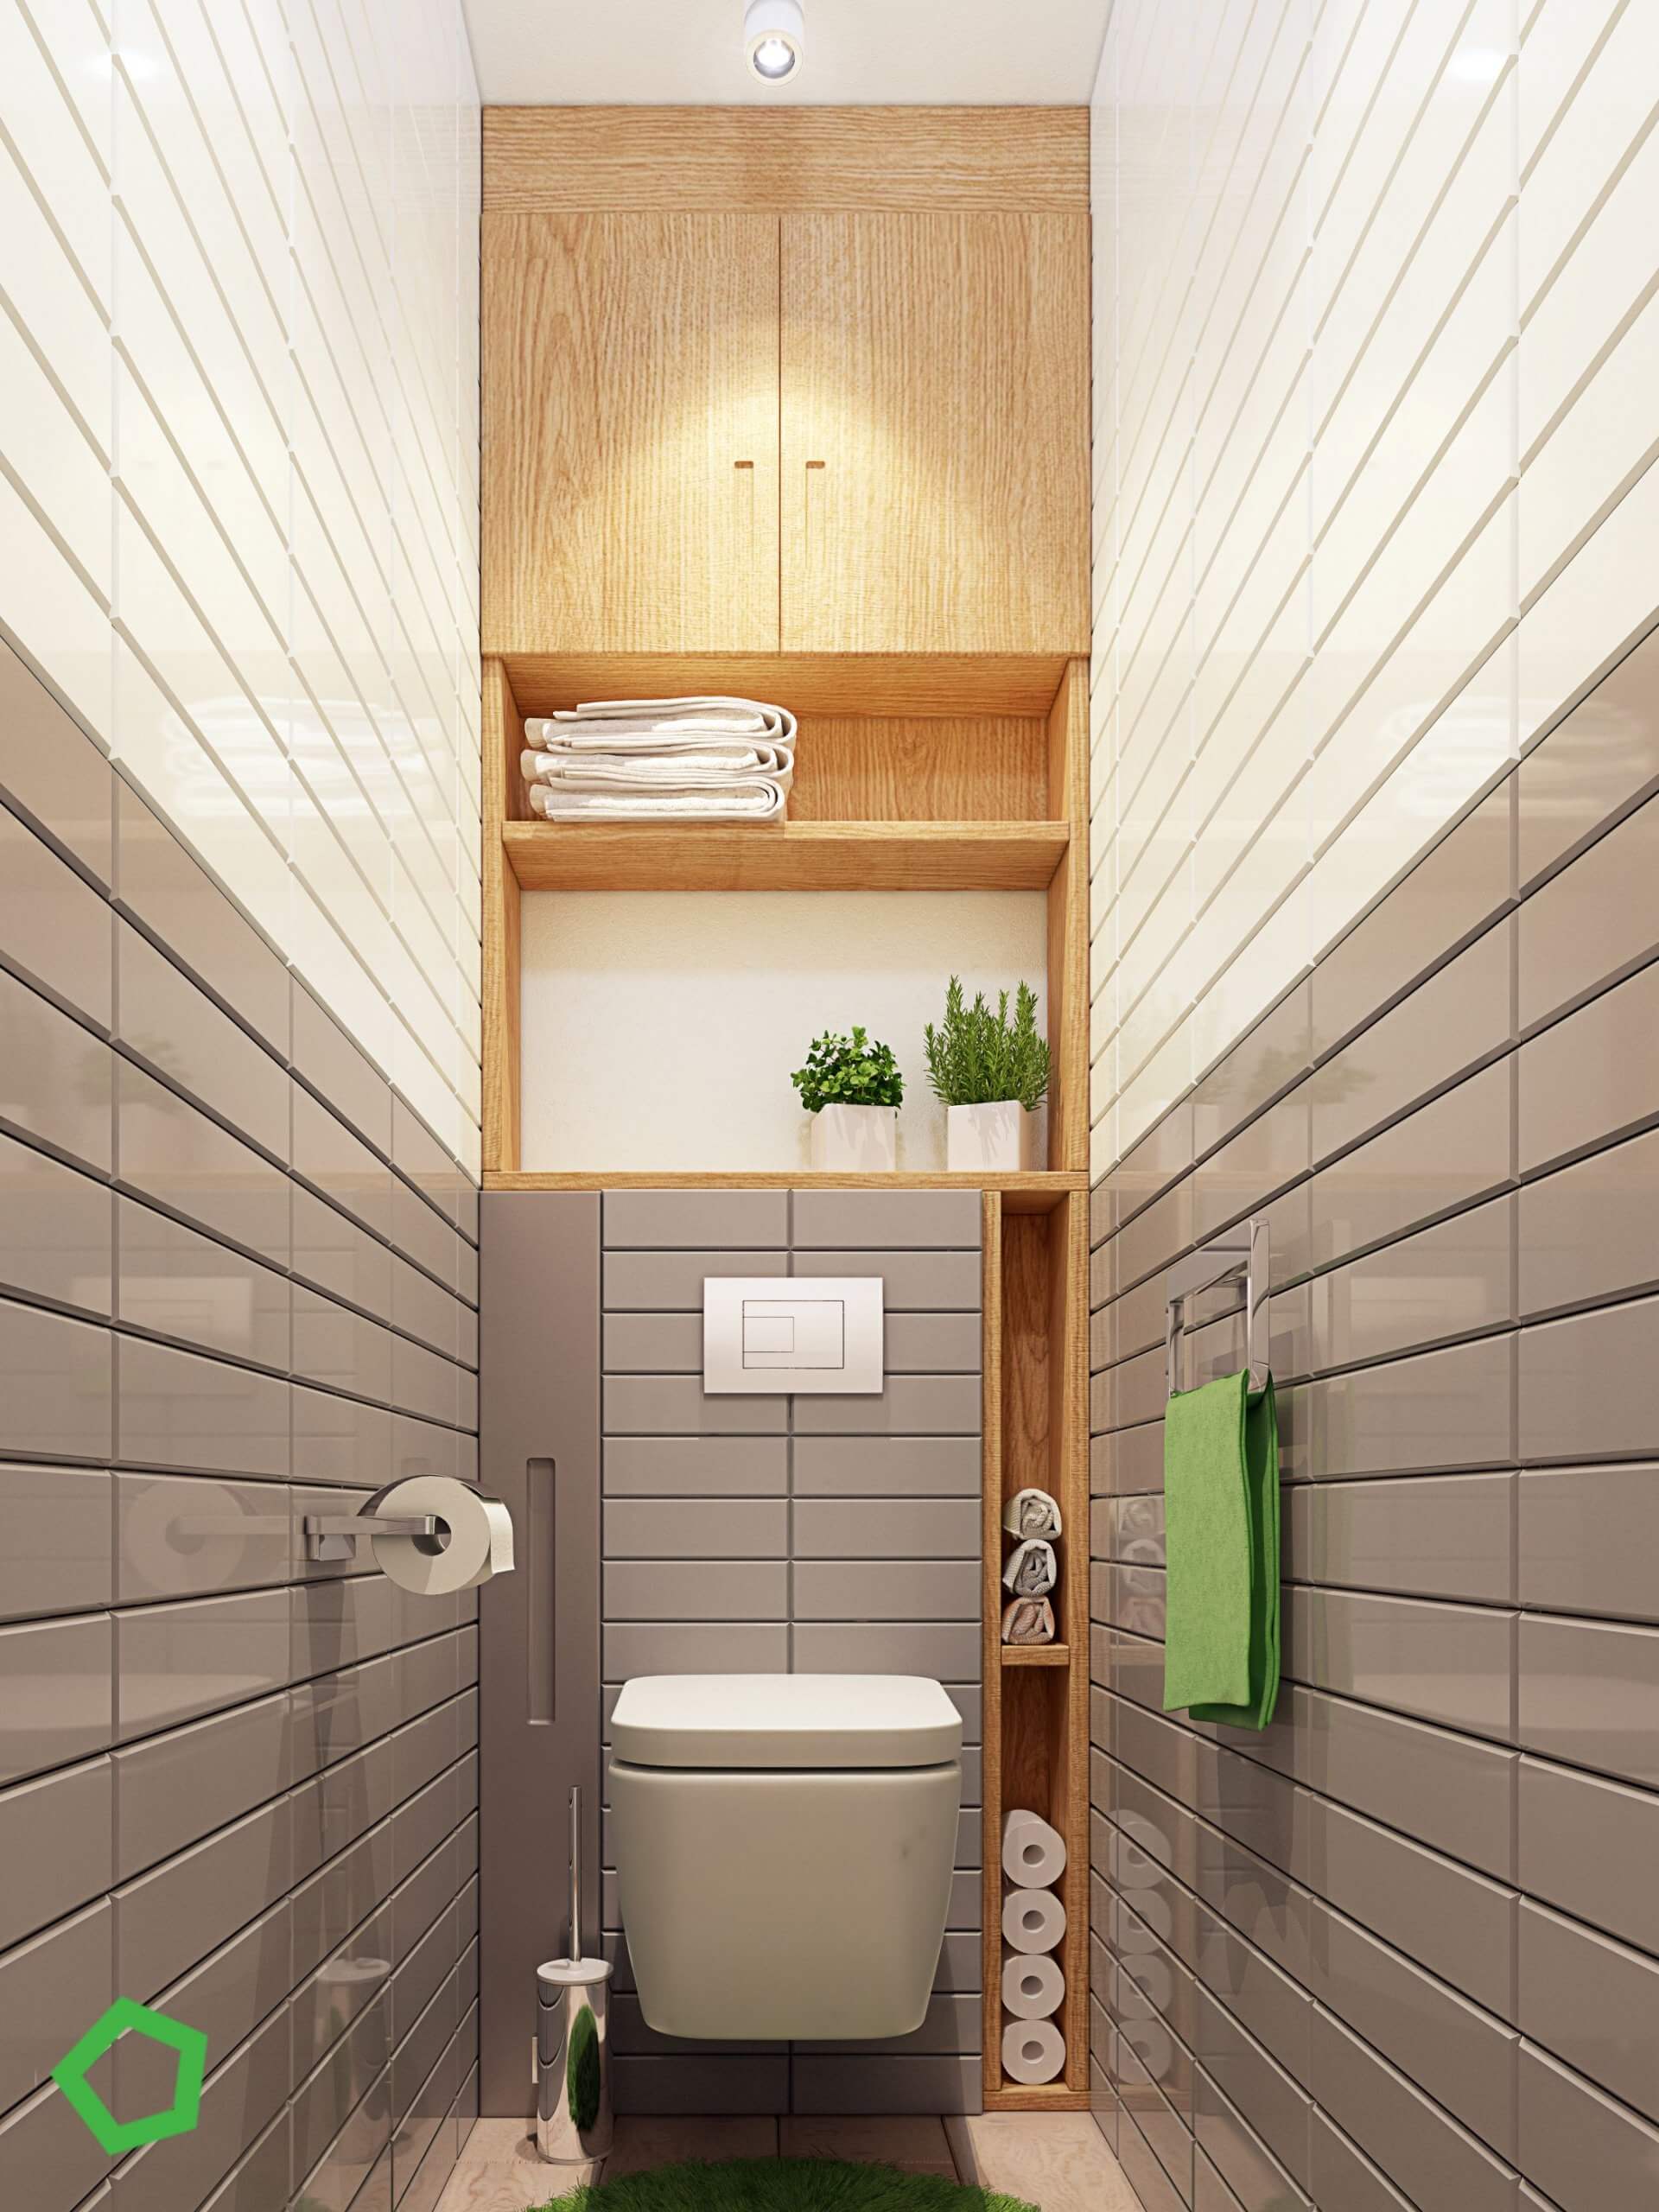 طراحی توالت سرویس بهداشتی37